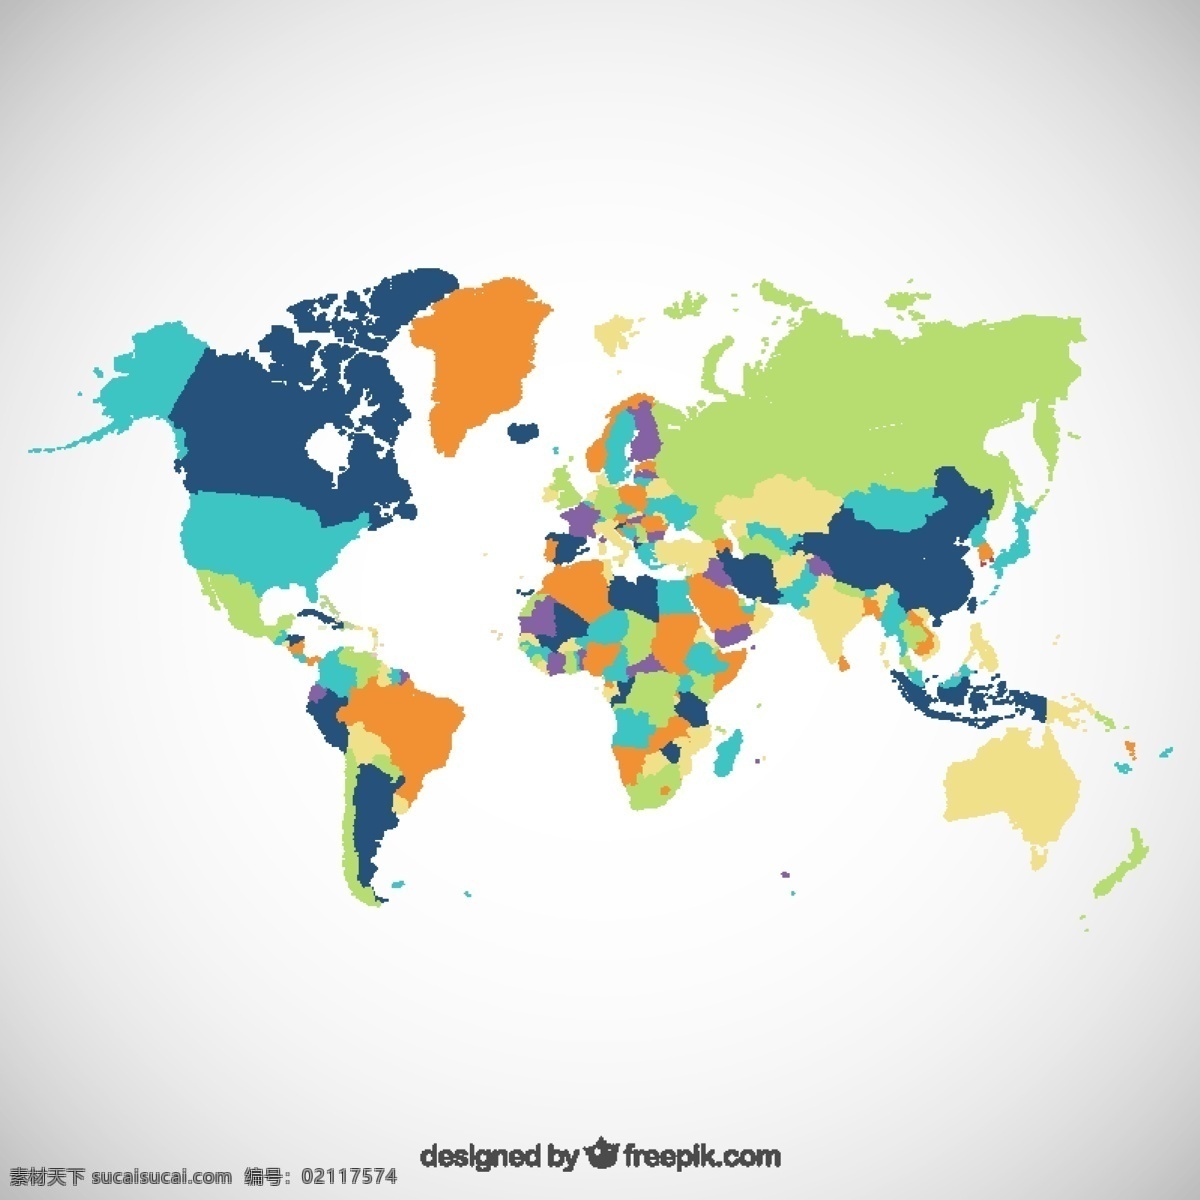 手绘世界地图 地图 世界 地球 世界地图 绘制 色彩艳丽 绘画 手工 国际 绘制世界地图 手绘 有色 全球